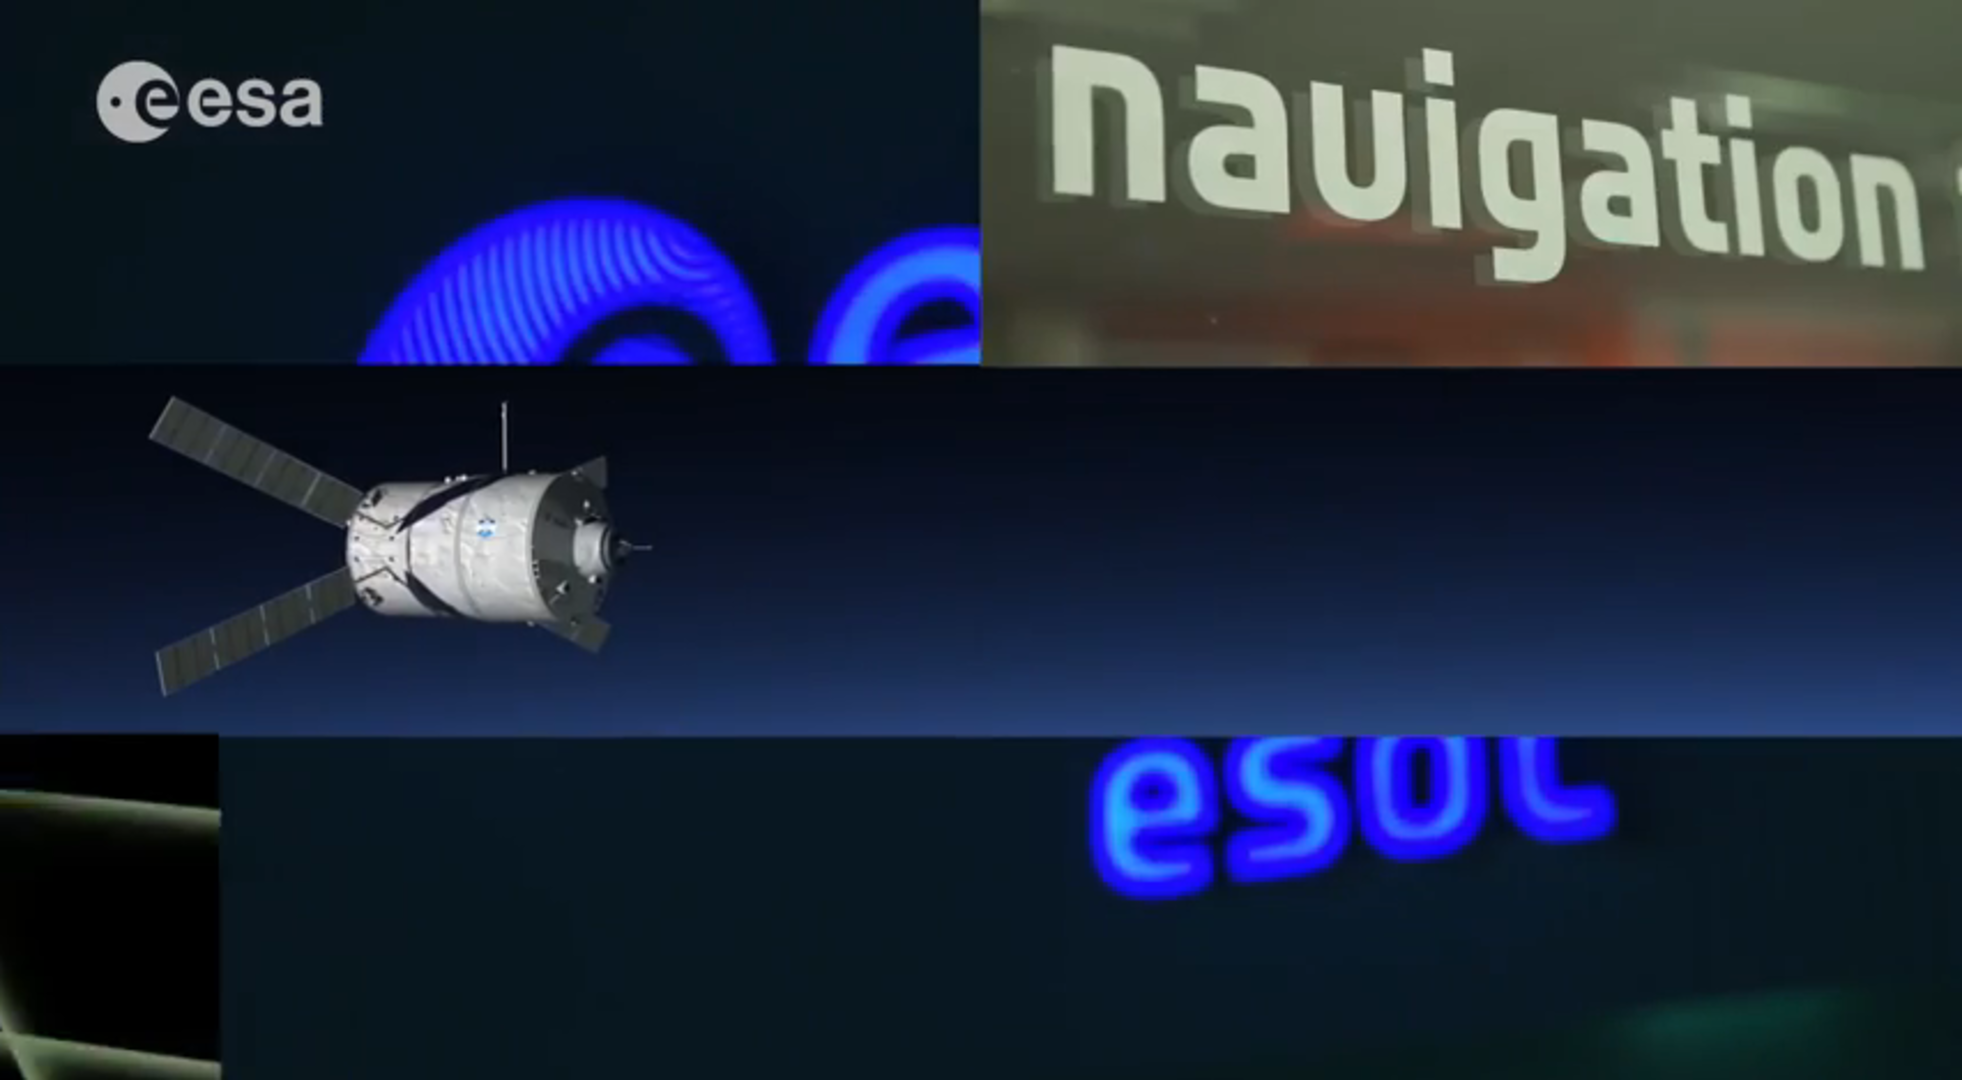 Navigation Facility at ESOC